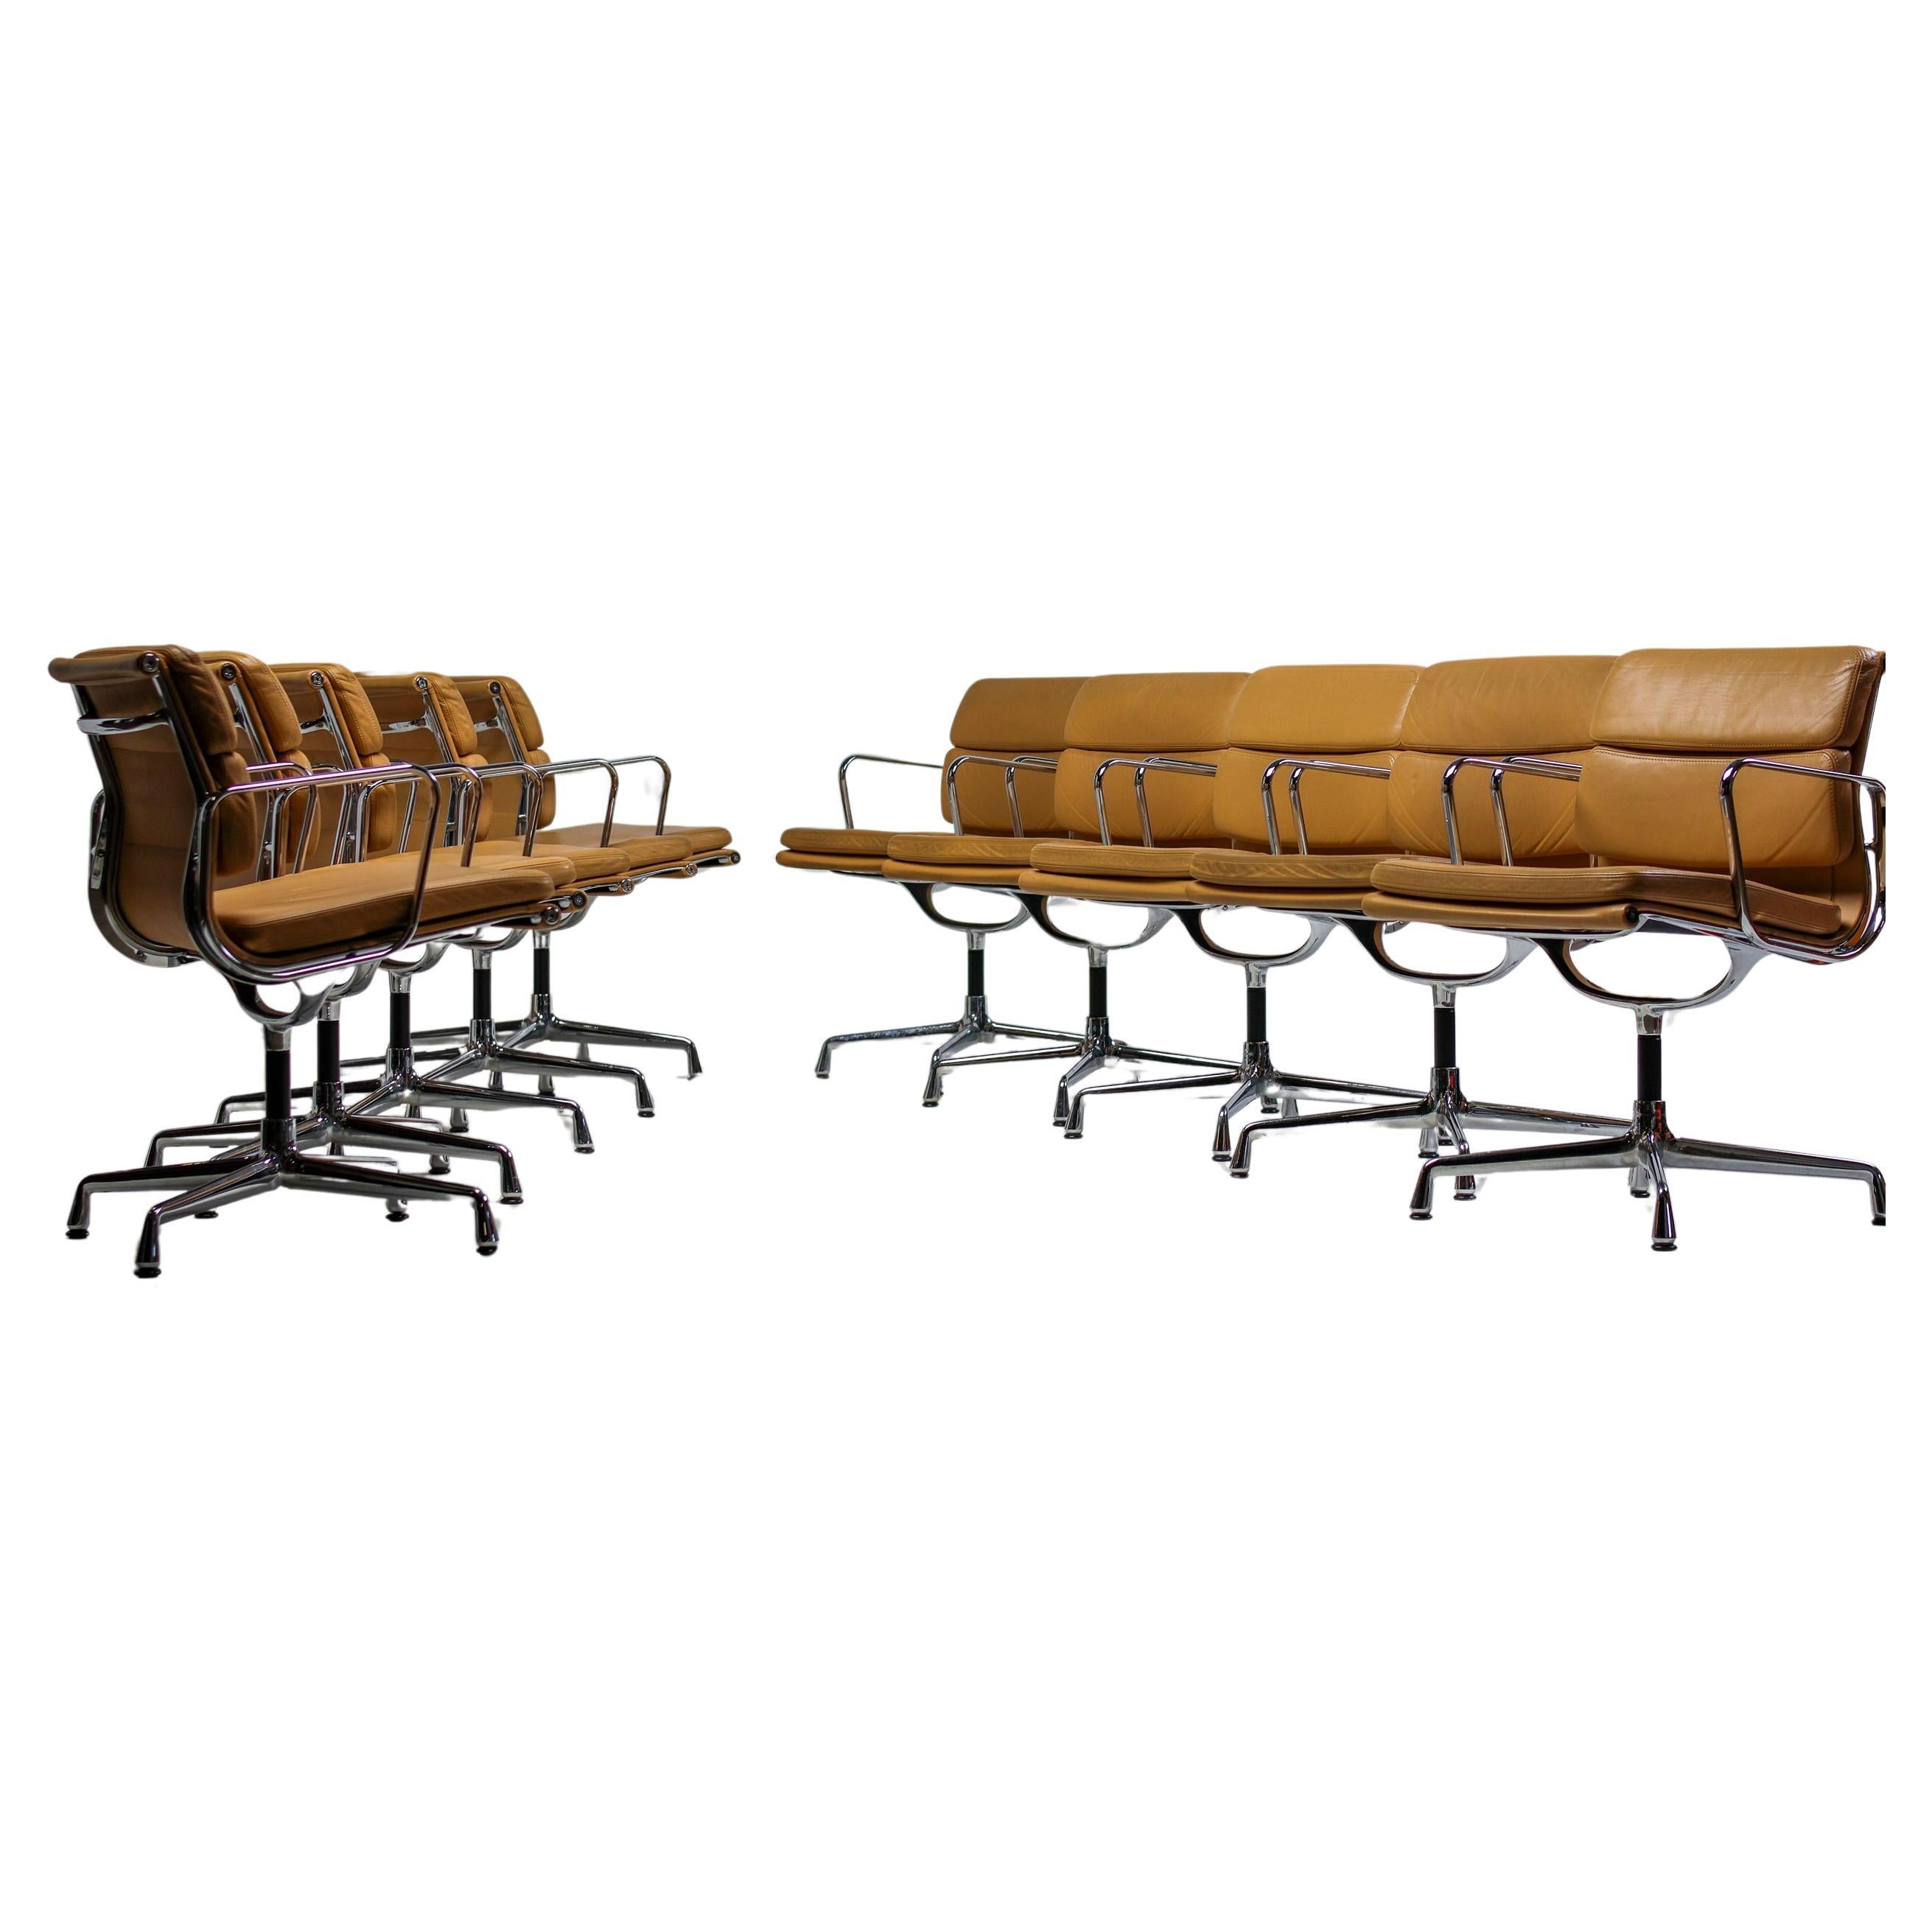 Dix chaises de bureau de groupe Eames en cuir souple brun clair EA 208 Eames par Vitra